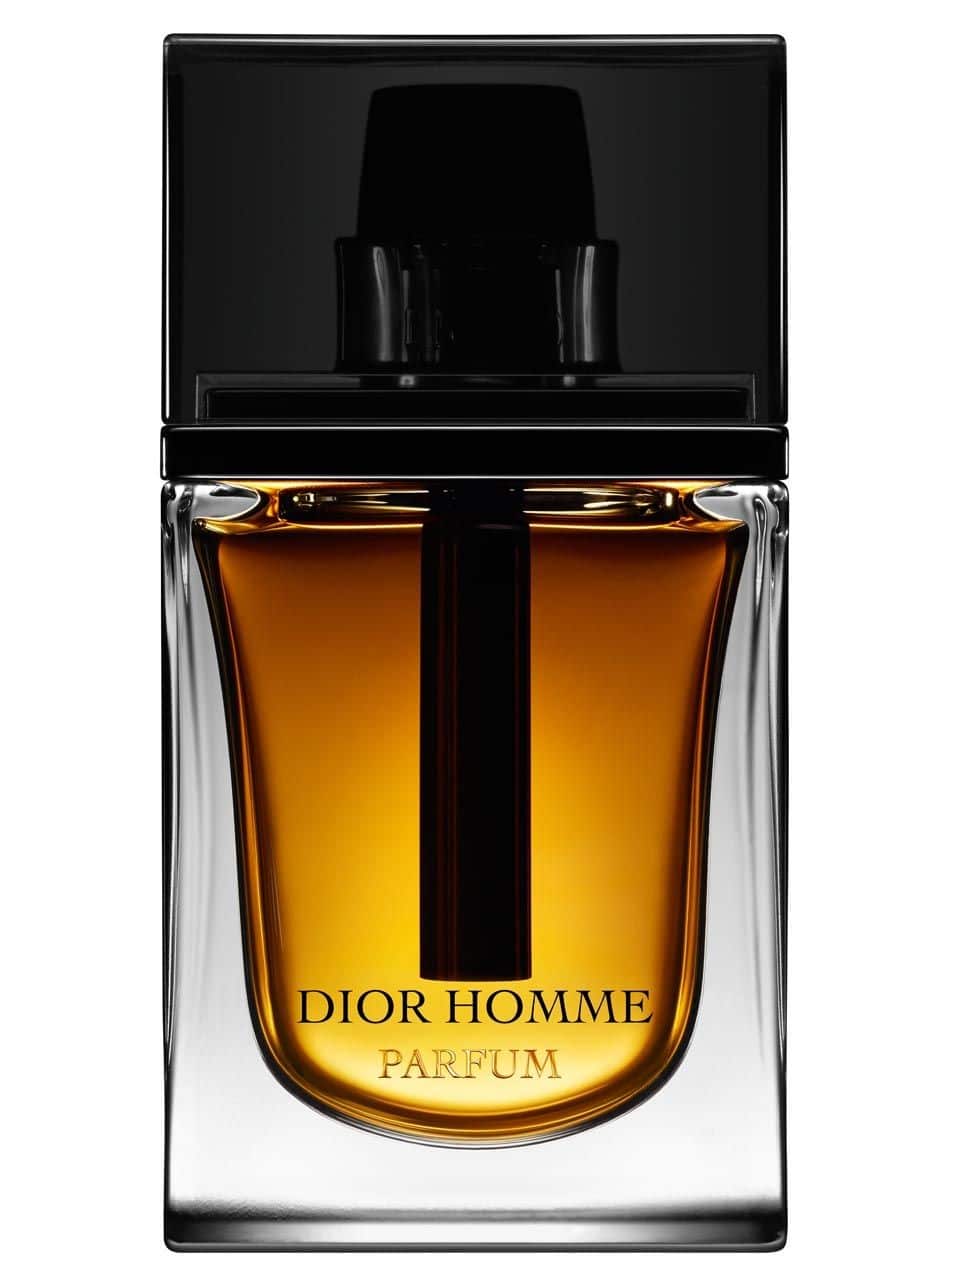 Najlepsze męskie perfumy popularne - Dior Homme. Ranking 2015